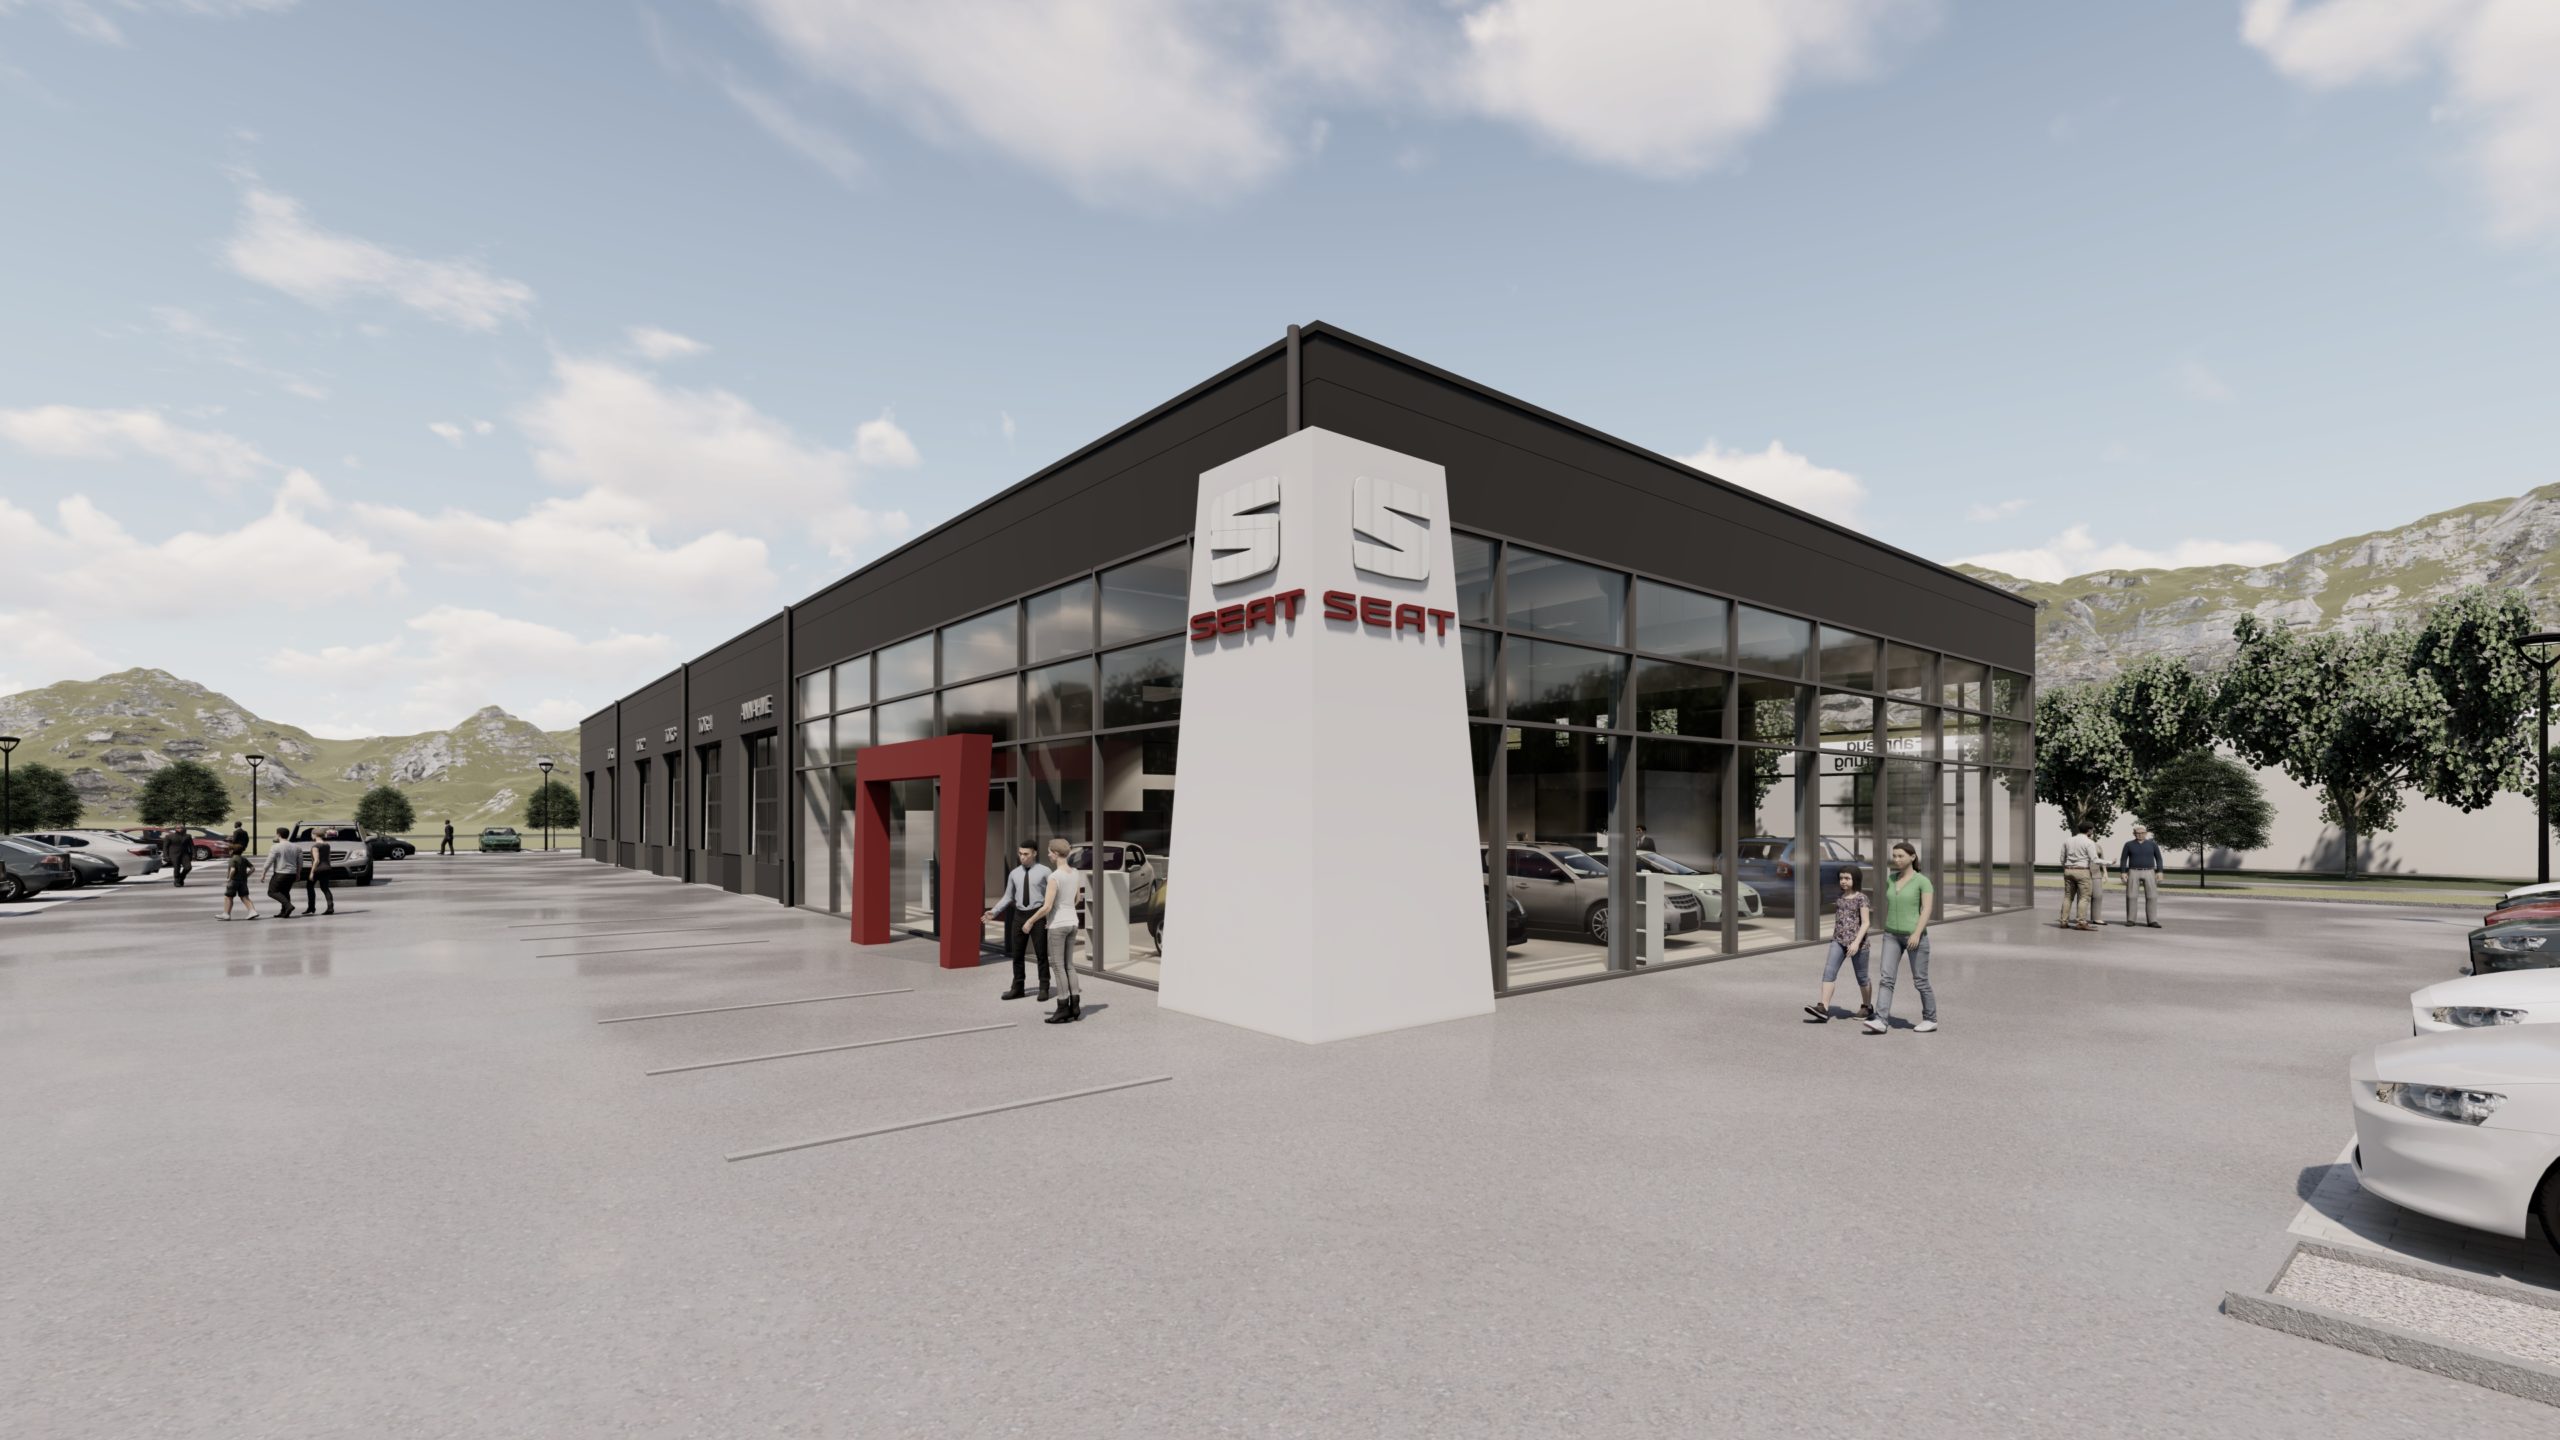 Neubau eines Autohauses in Wittlich